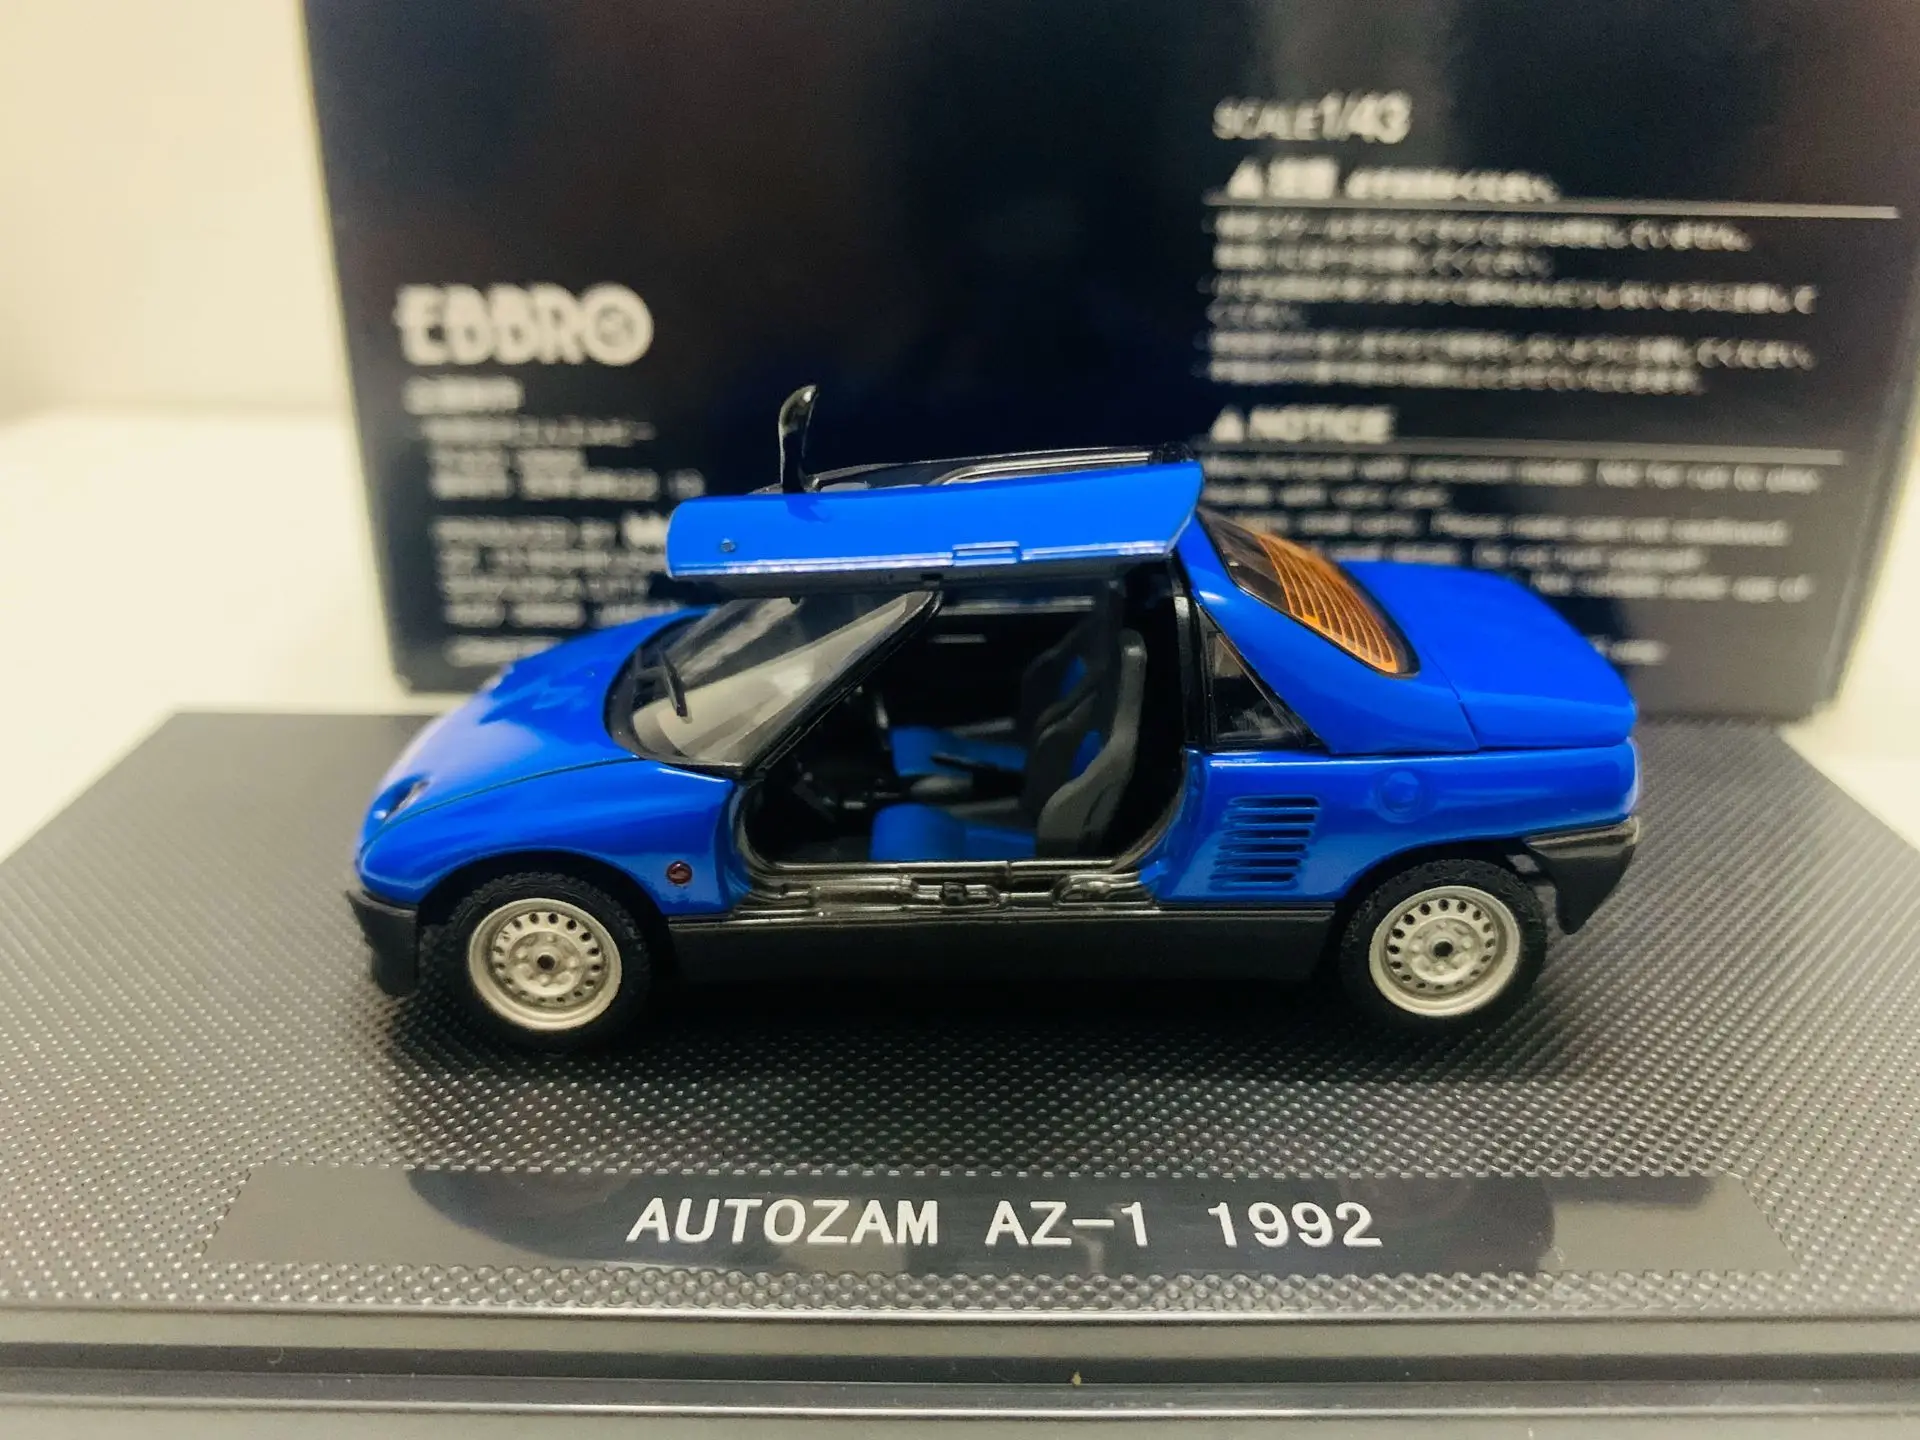 

Ebbro 1/43 Масштаб литье под давлением модель автомобиля autoзам фотосессия 1992 Синий Новый в оригинальной коробке